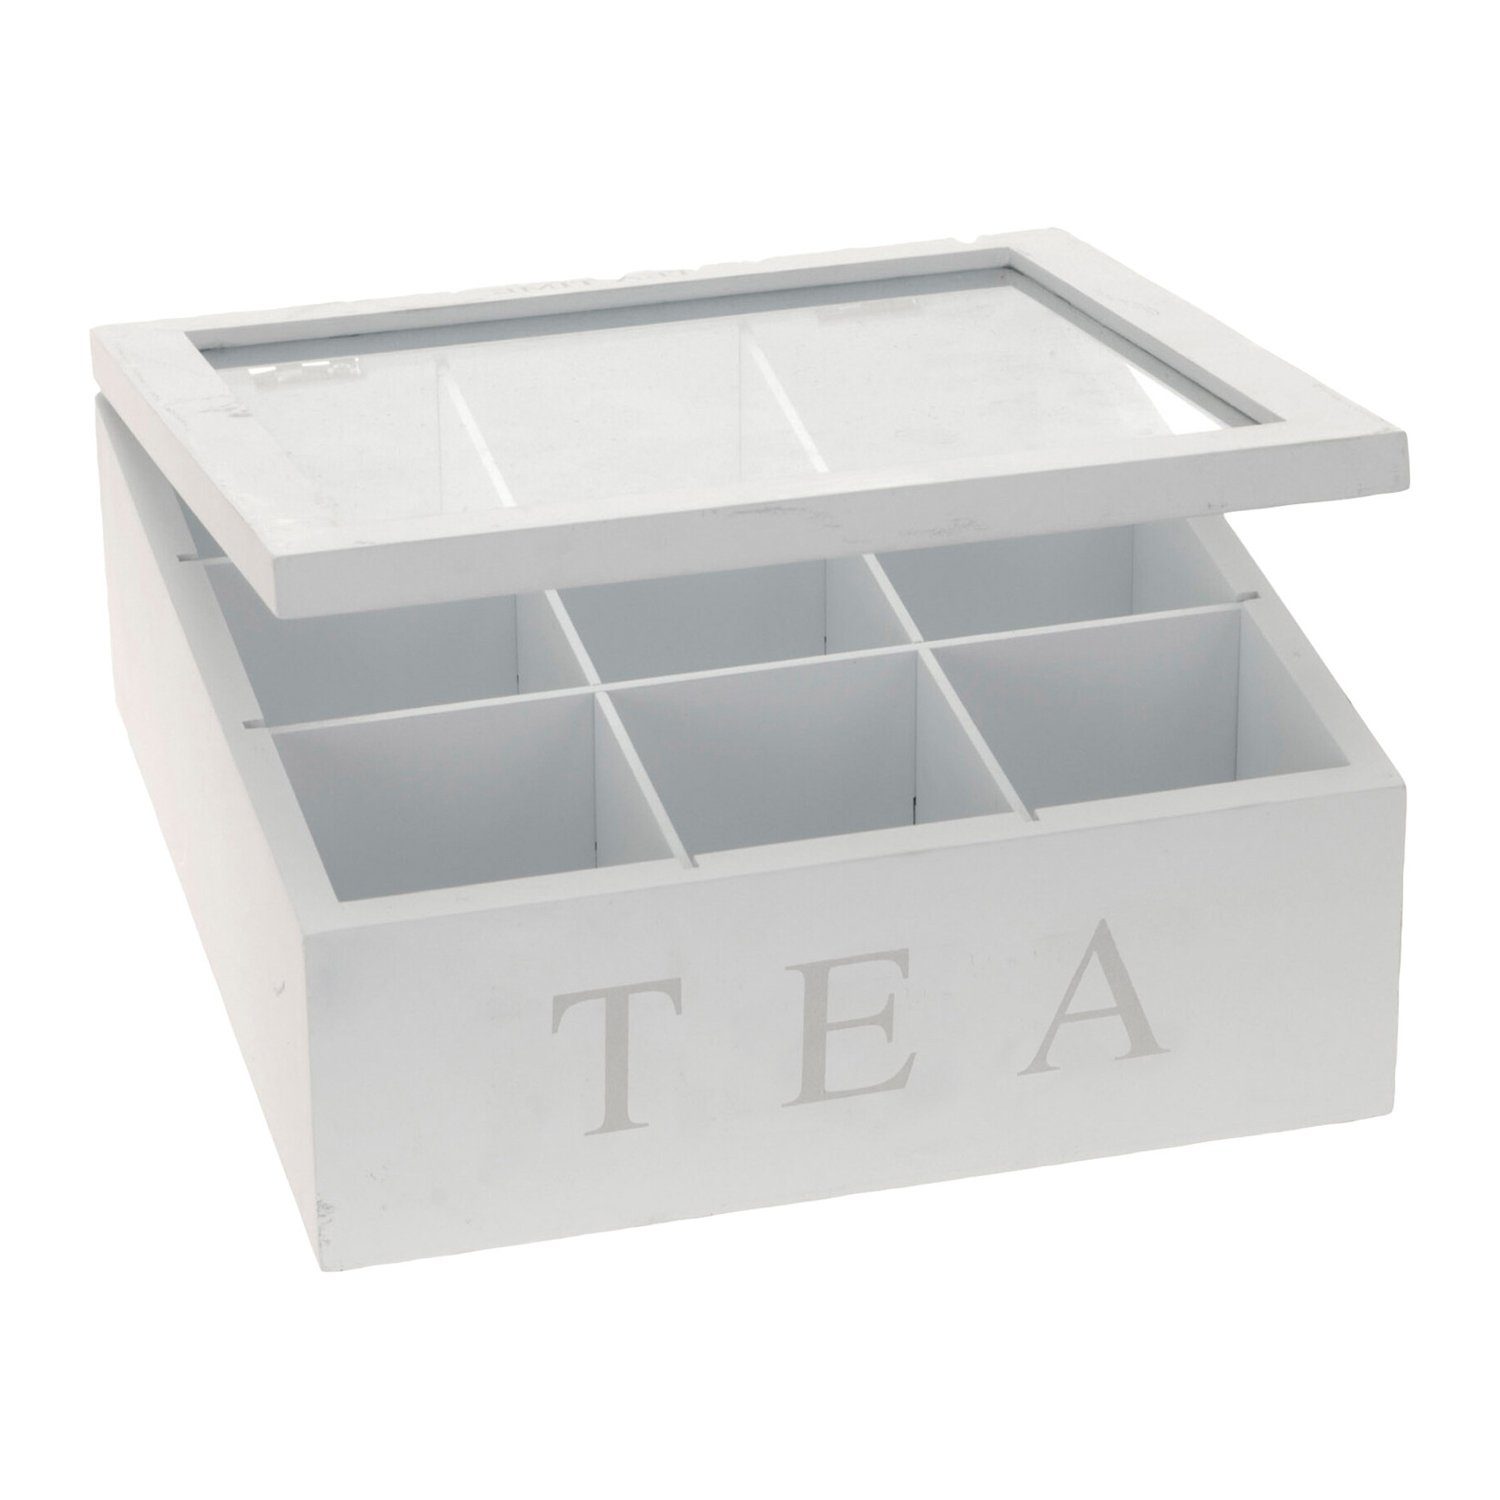 INDA-Exclusiv TEA Nähkästchen Teebox Weiß mit Holz 9-Fächer Deckel Aufschrift